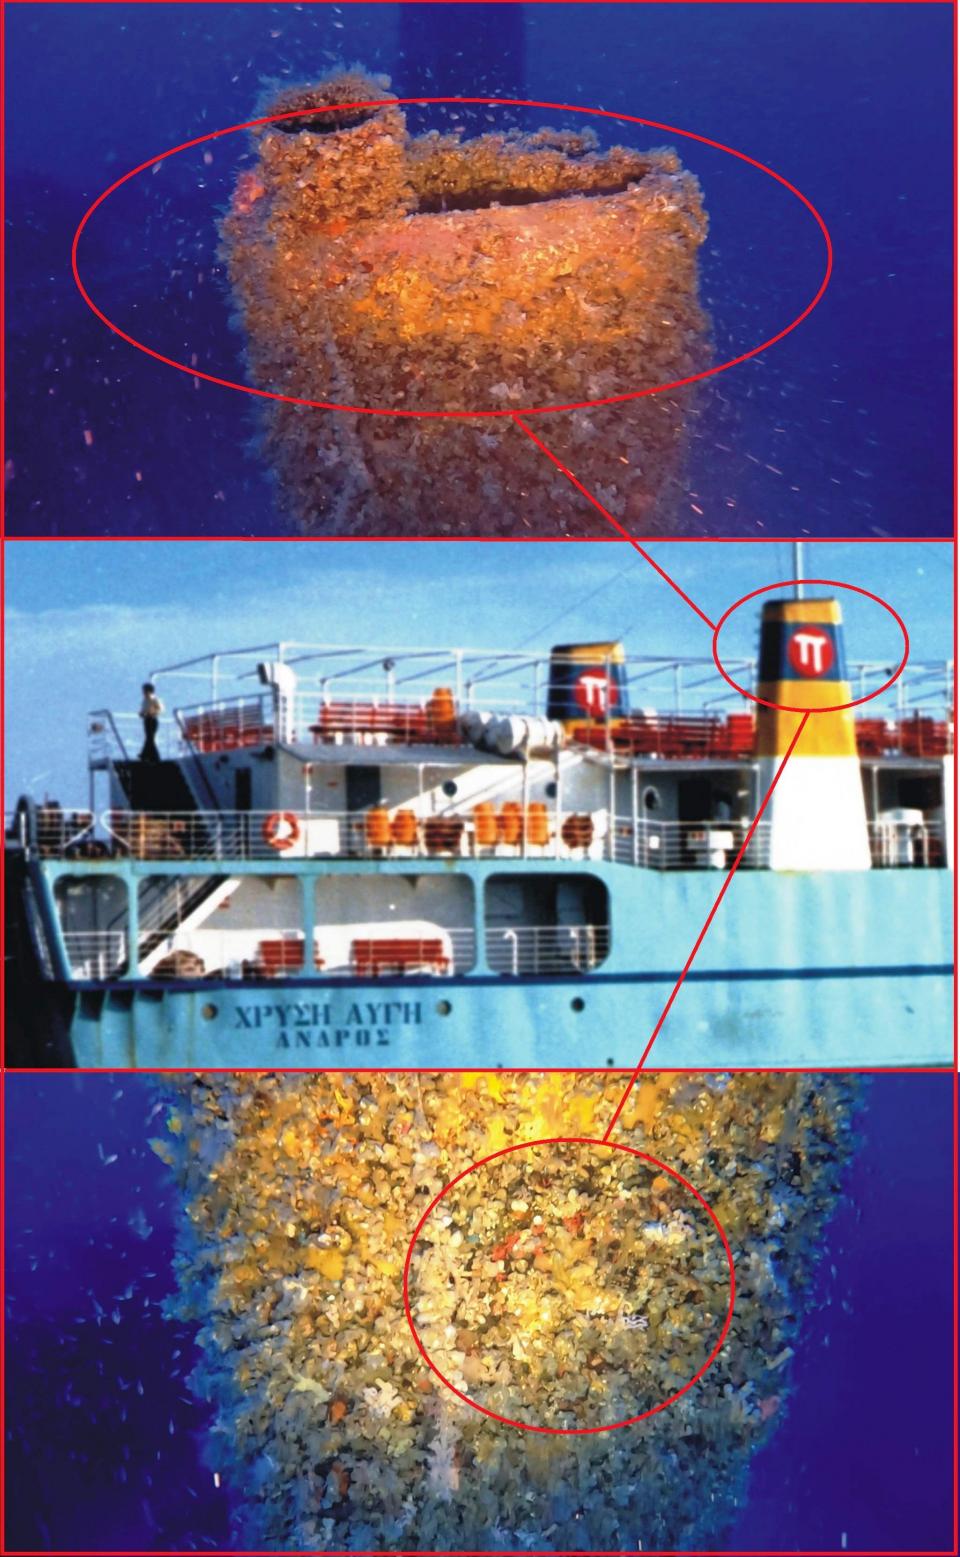  Οι χαρακτηριστικές τσιμινιέρες του ναυαγίου Χρυσή Αυγή που πάρα την έκρηξη και την πυρκαγιά που ακλούθησε κατά την βύθιση του πλοίου 40 χρόνια πριν ακόμη και σήμερα διακρίνονται τα χρώματα ¨σινιάλα¨ της τότε πλοιοκτήτριας εταιρείας. 